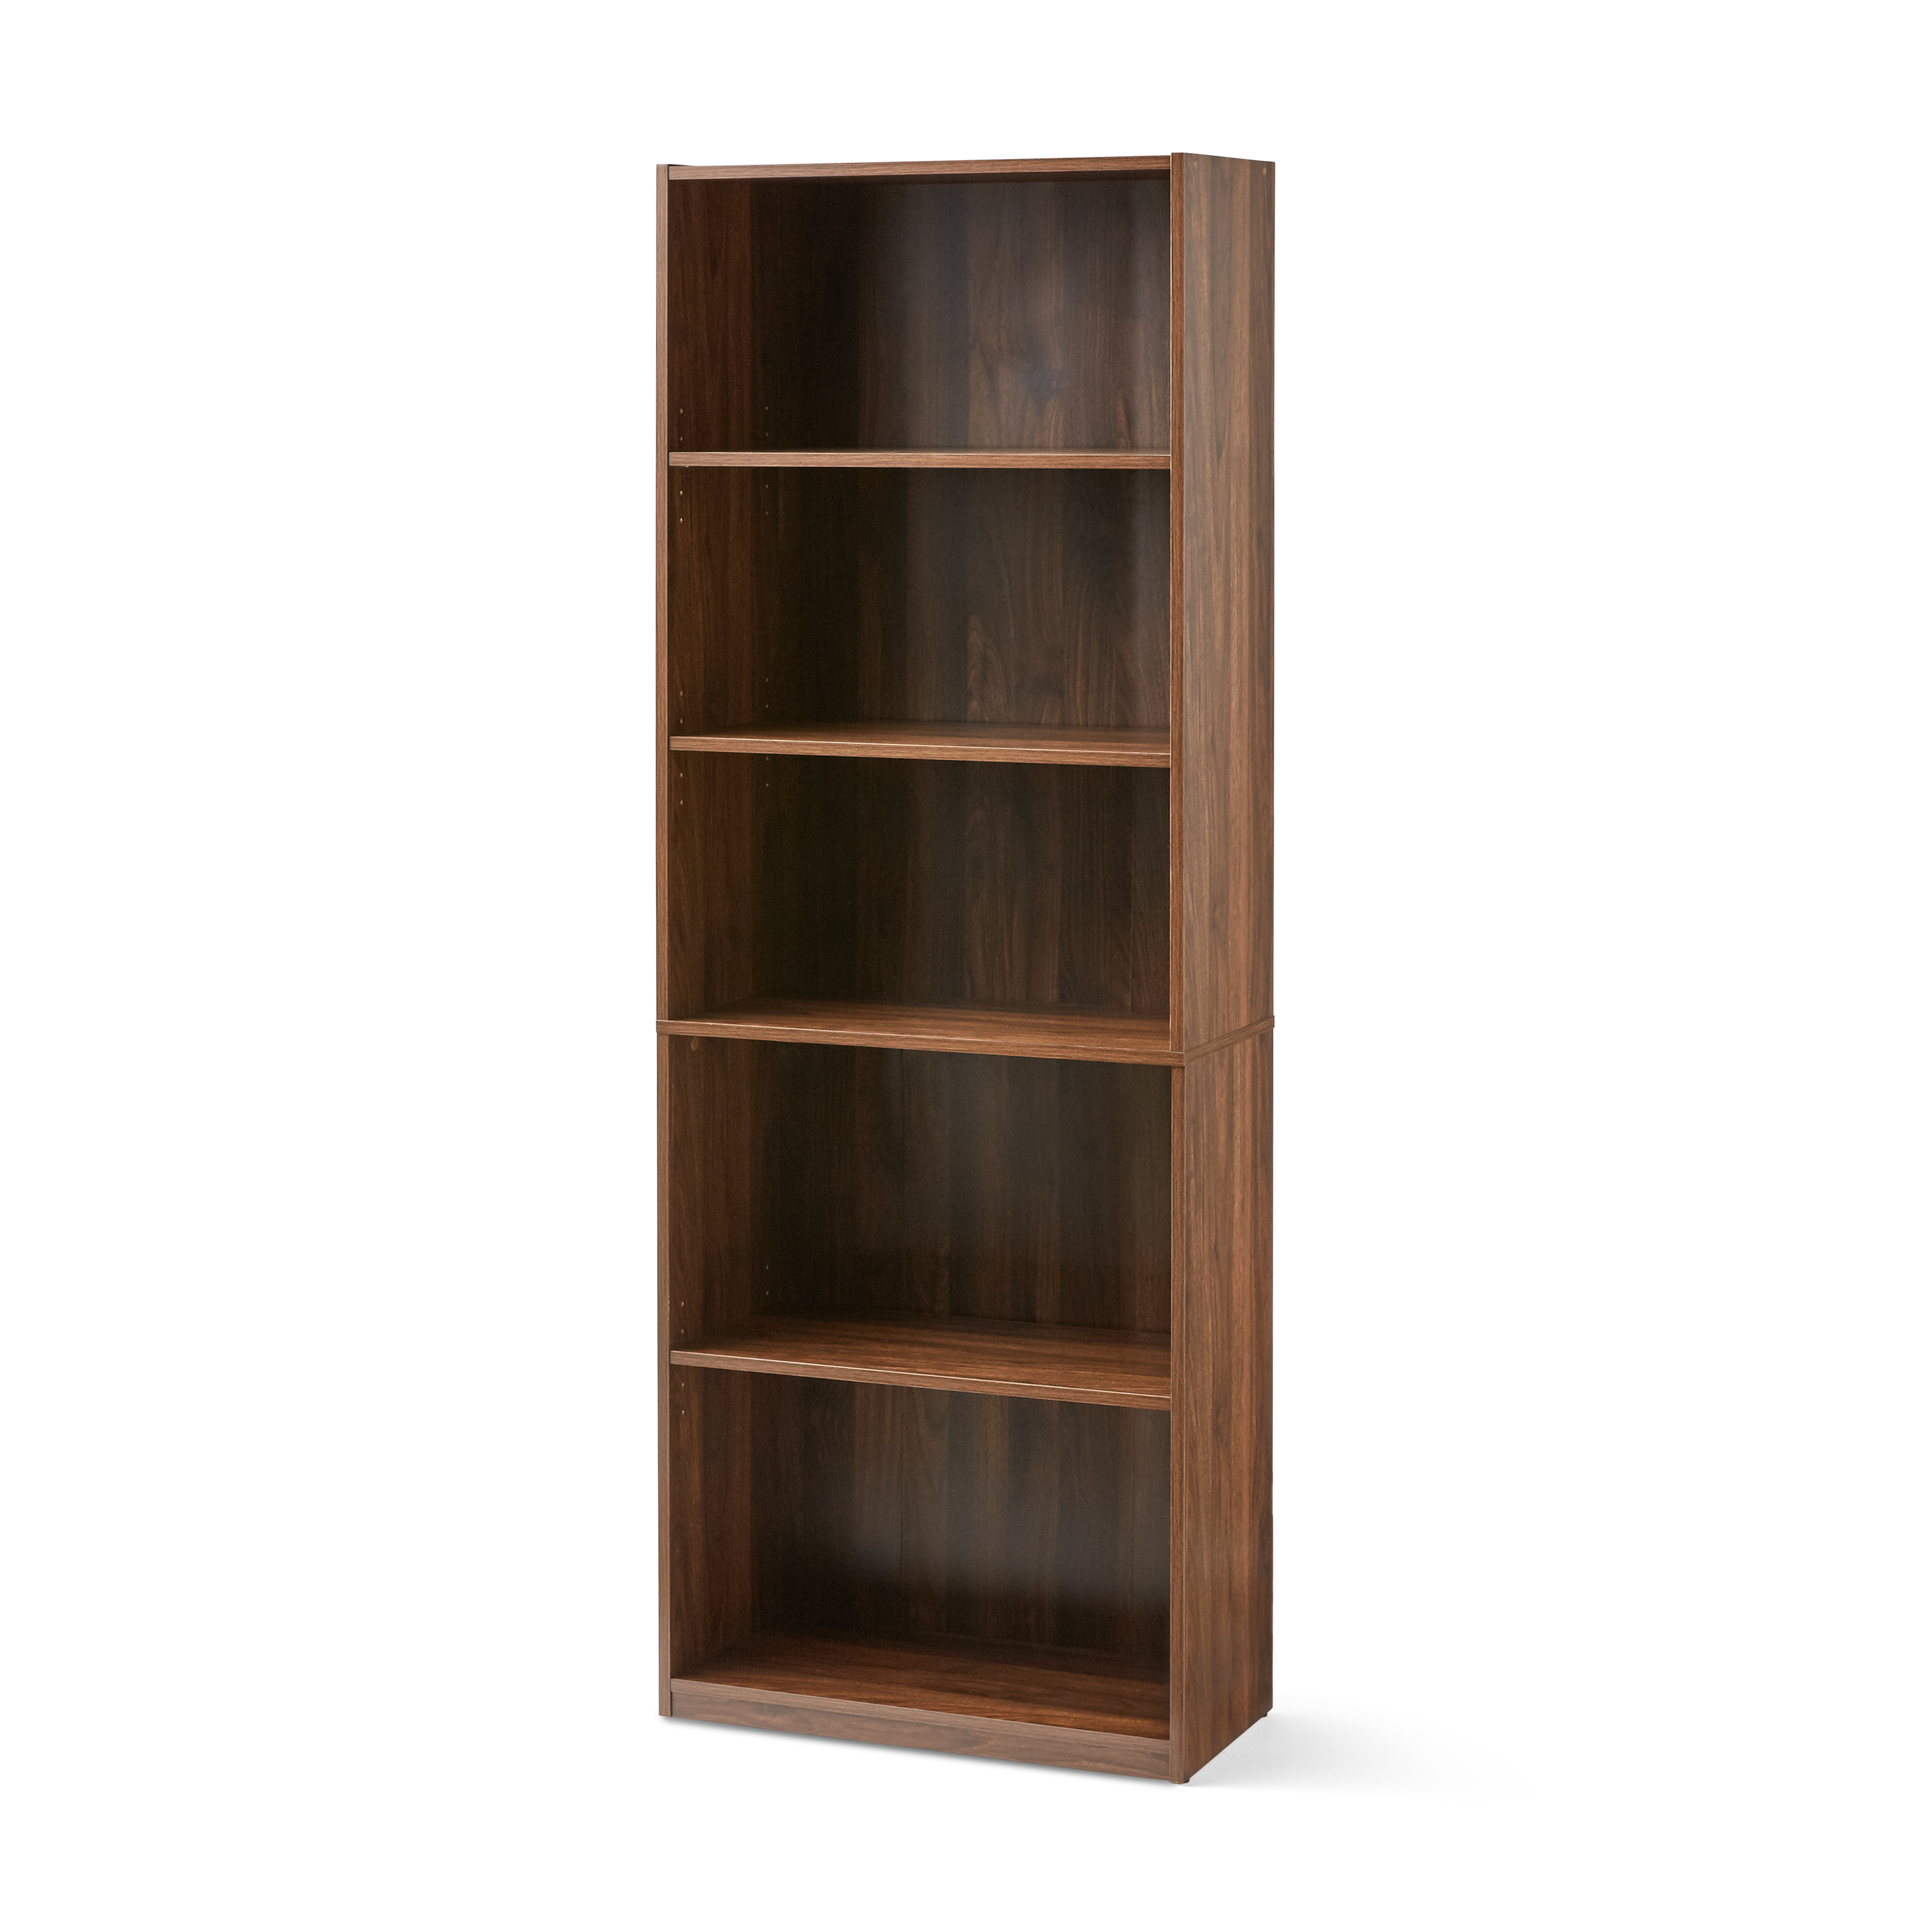 Mainstays 5-Shelf Bookcase with Adjustable Shelves, Canyon Walnut - image 3 of 5